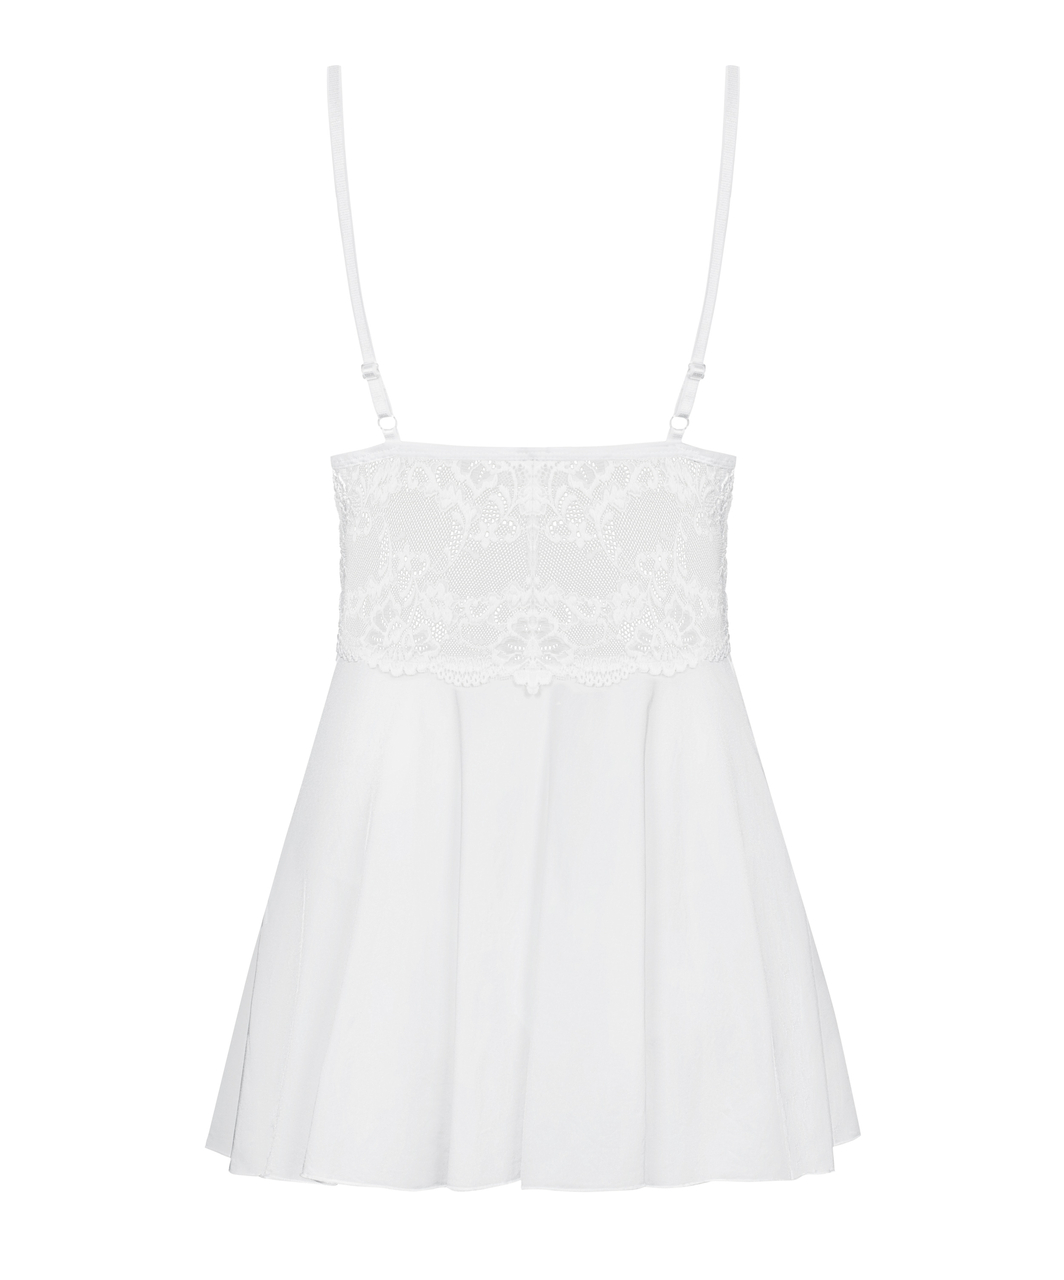 Obsessive valge babydoll-kleit polsterdatud korvidega